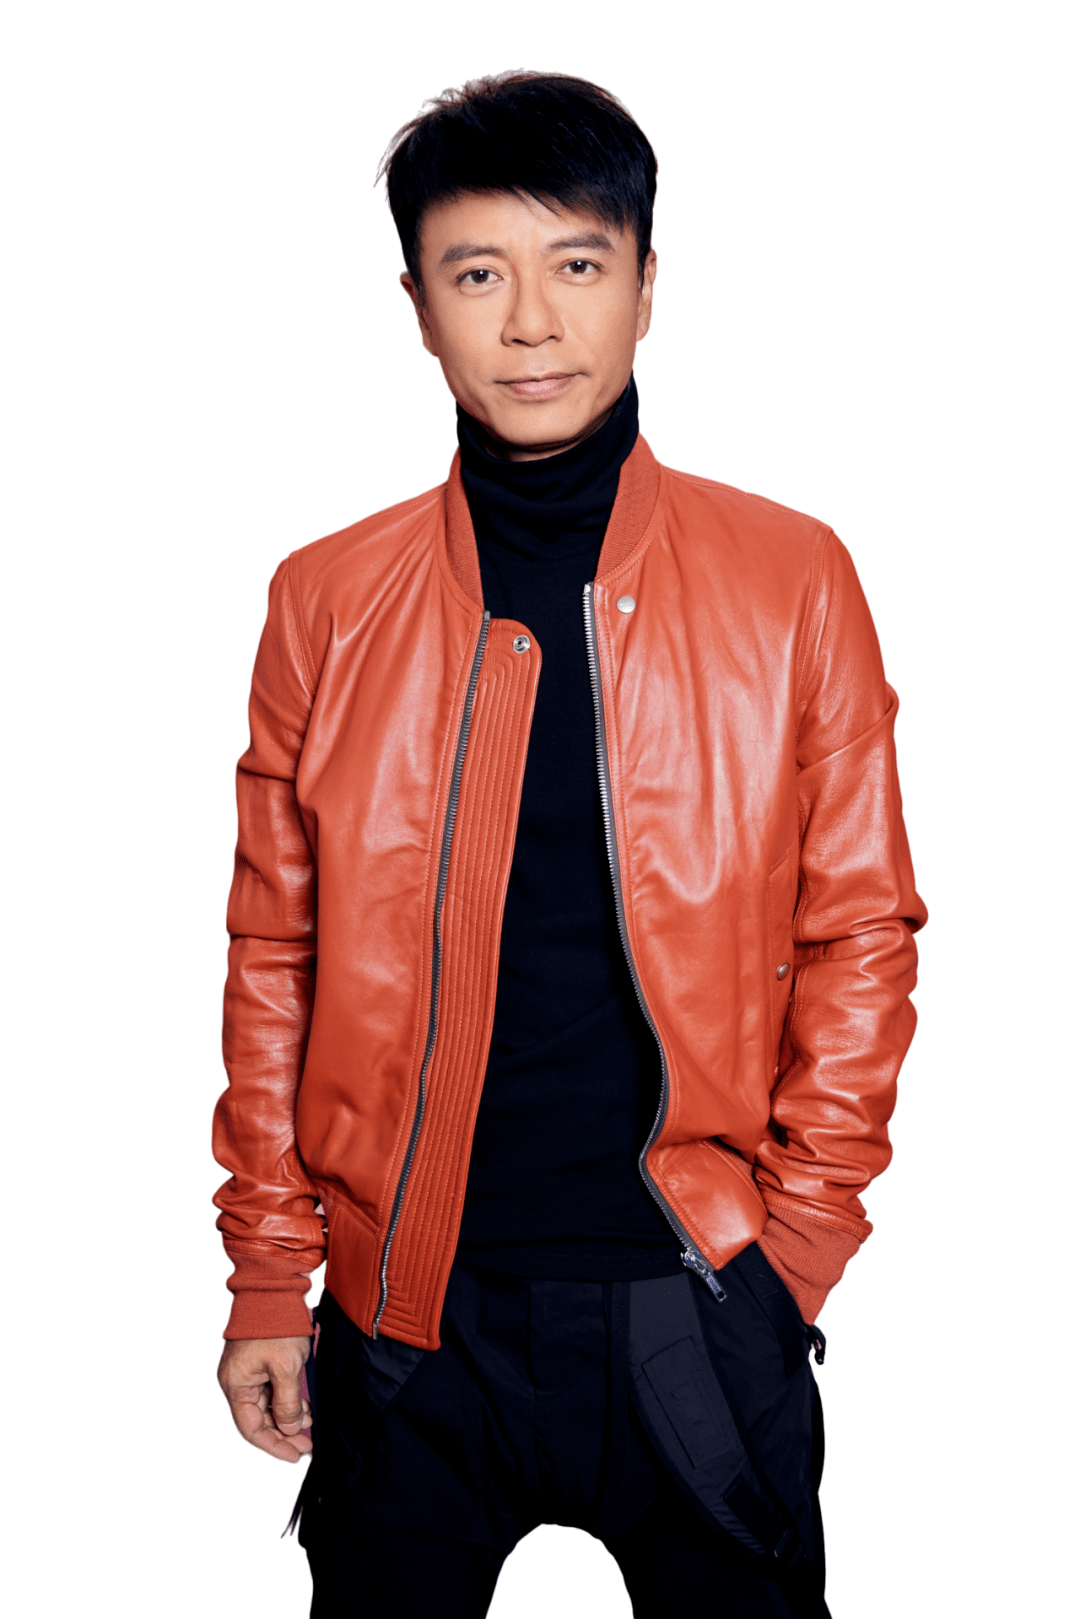 李克勤李荣浩是一位创作型歌手,他是数字化个性时代里中国流行音乐的